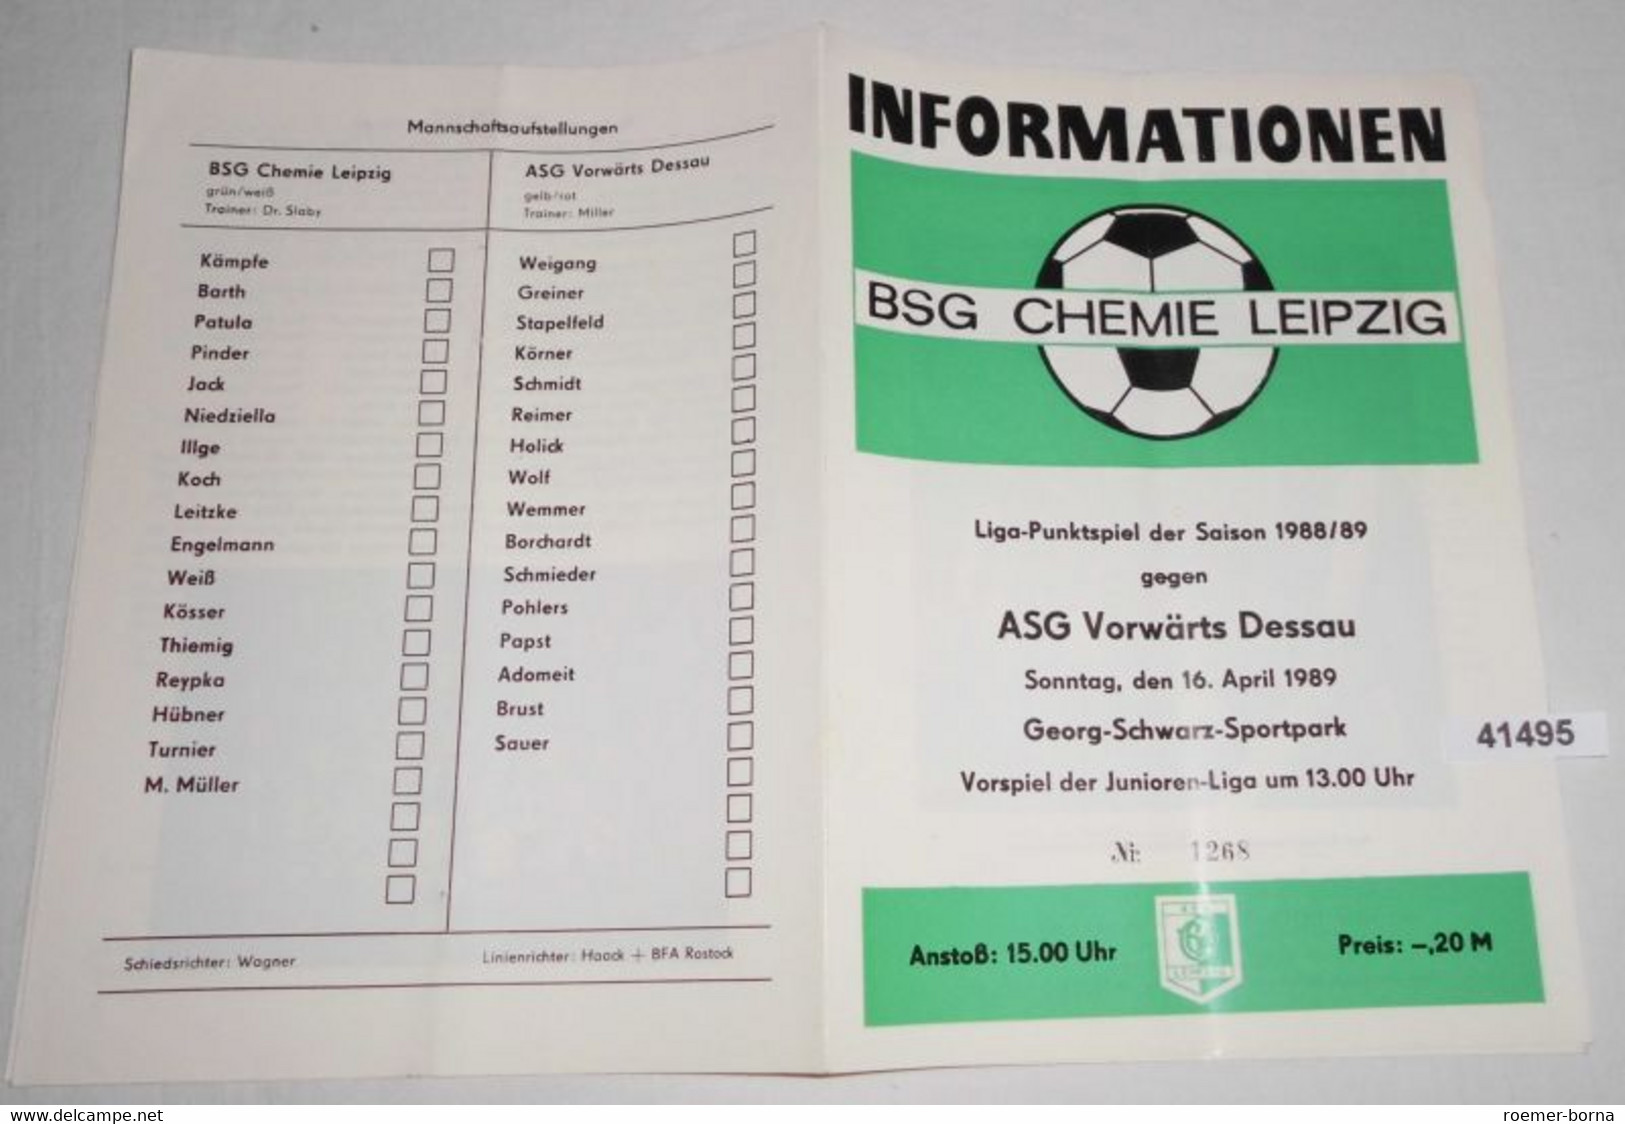 Informationen Nr. 1268 Liga-Punktspiel Der Saison 1988/89 BSG Chemie Leipzig Gegen ASG Vorwärts Dessau - Sports